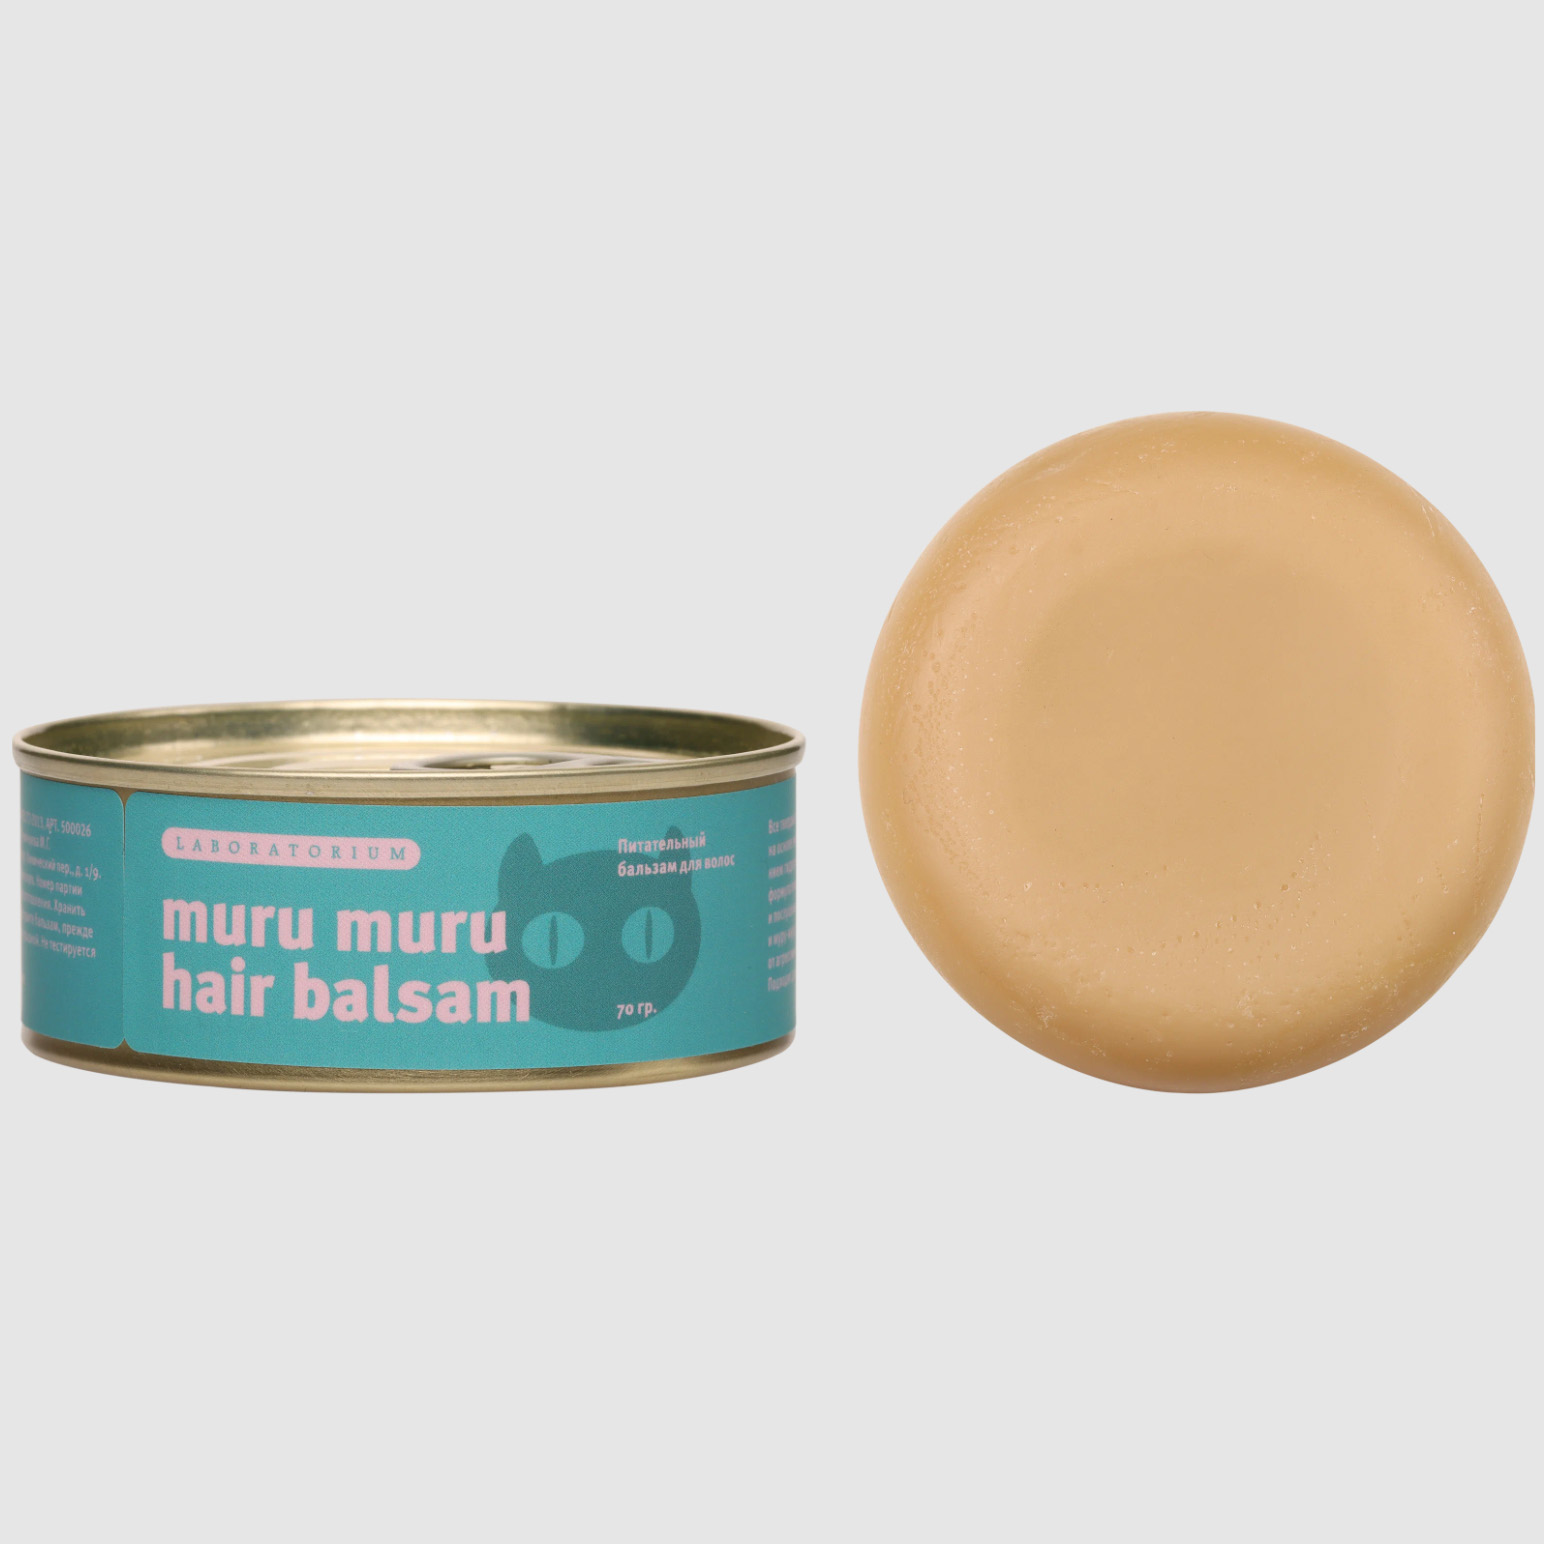 Бальзам для волос Laboratorium Muru Muru питательный, твердый, 70 г loreal elseve легкий питательный бальзам роскошь 6 масел 200 мл